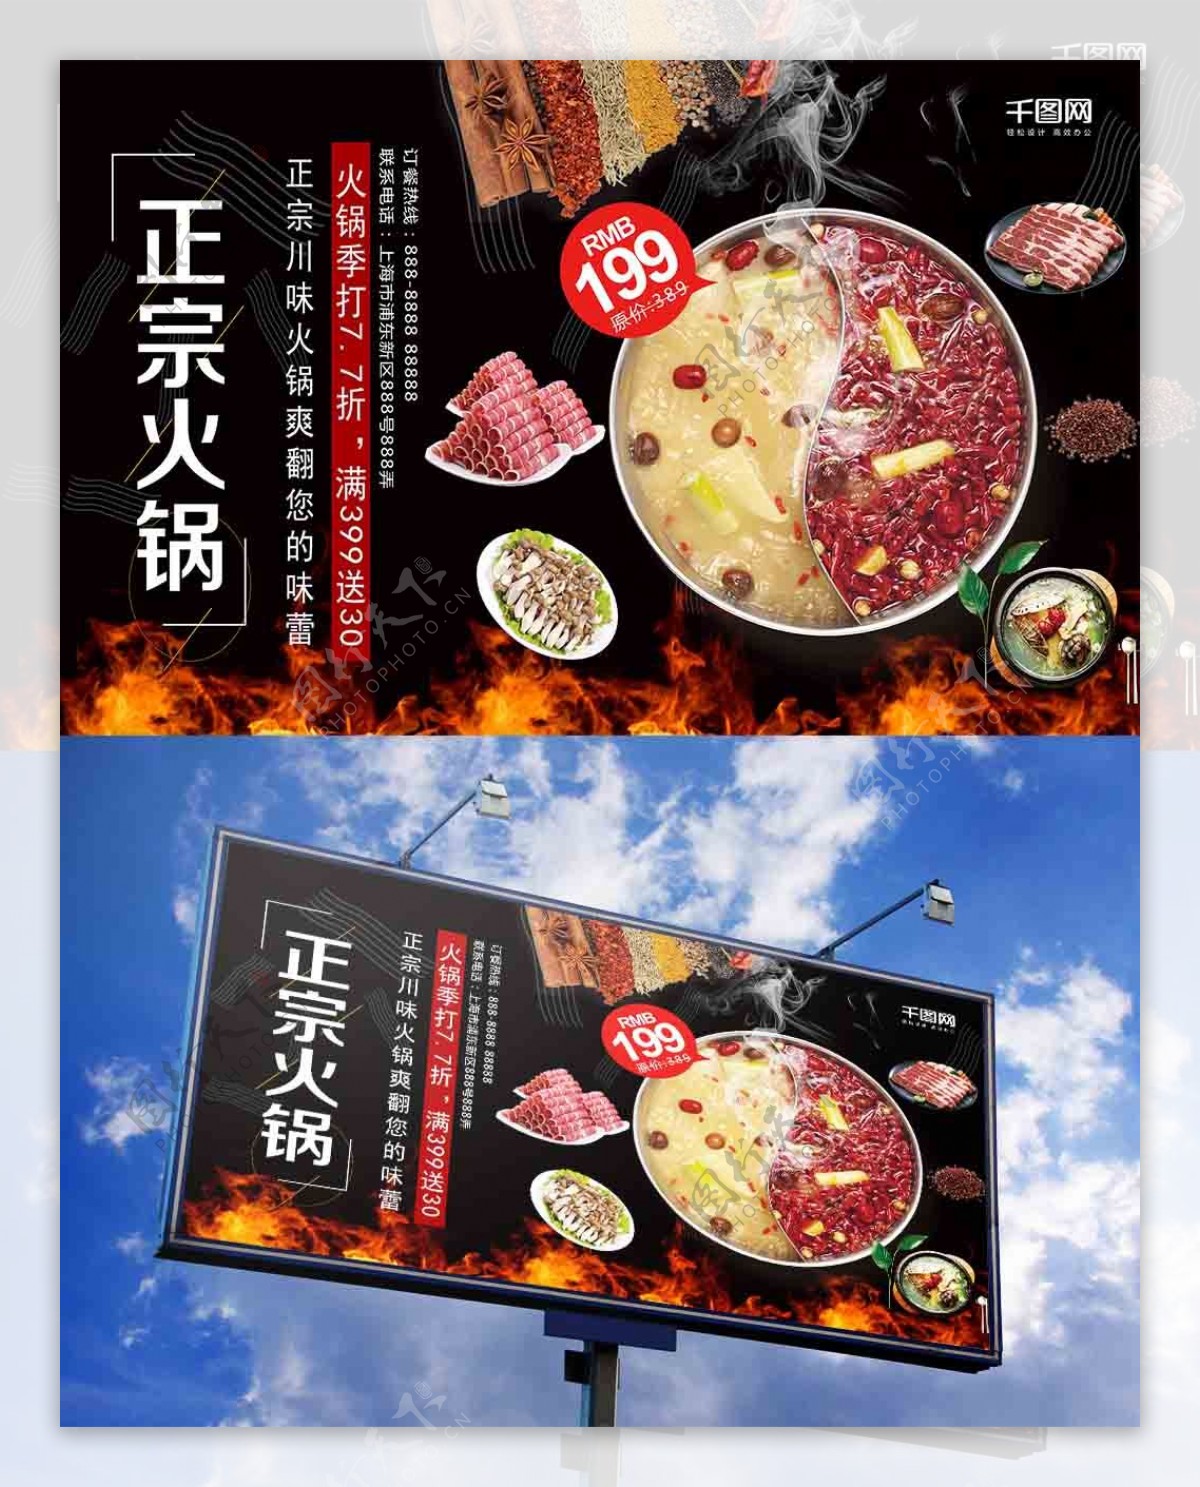 时尚川味火锅促销活动展板设计